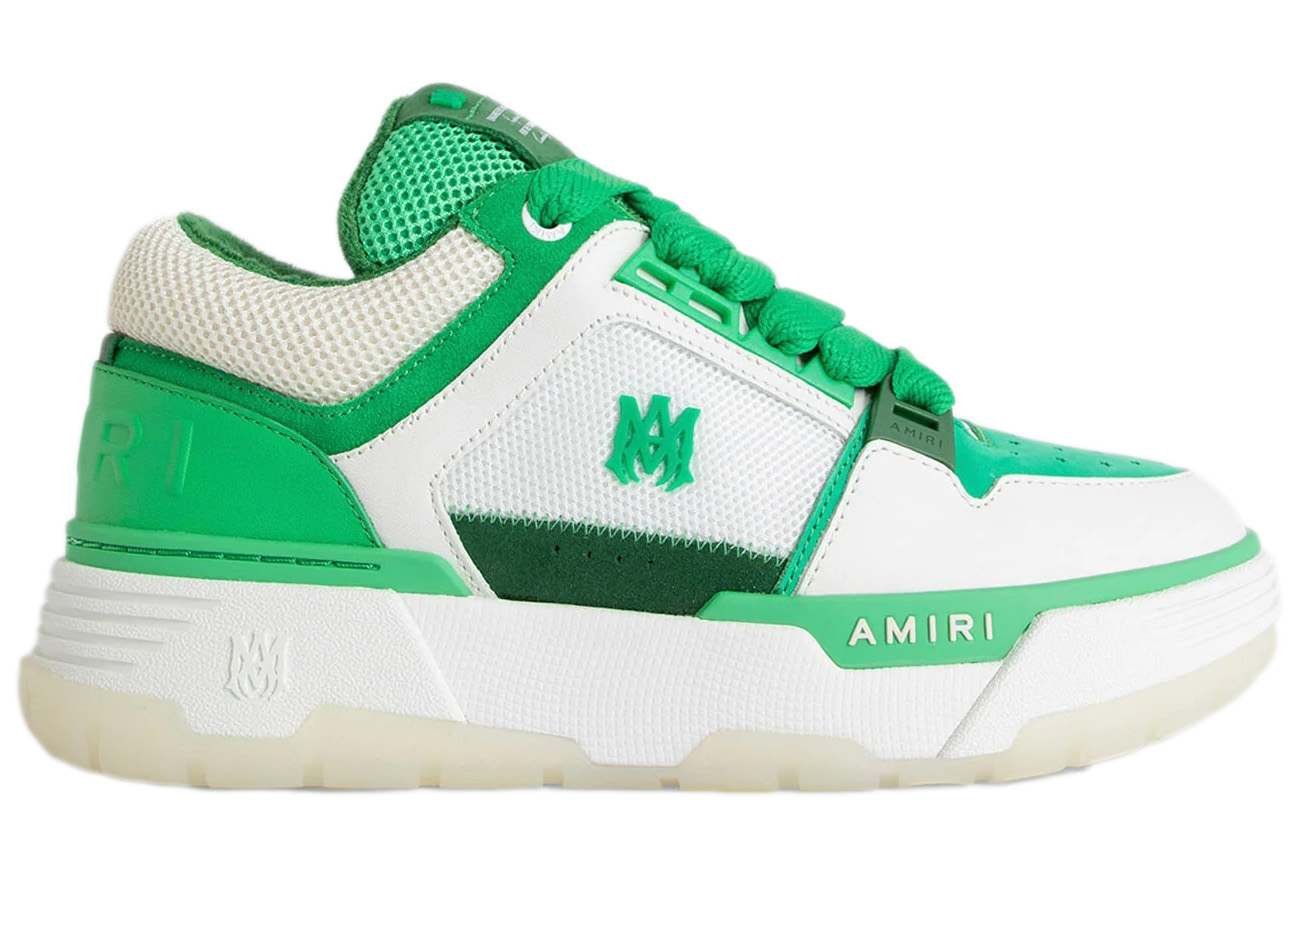 AMIRI MA-1 White Green